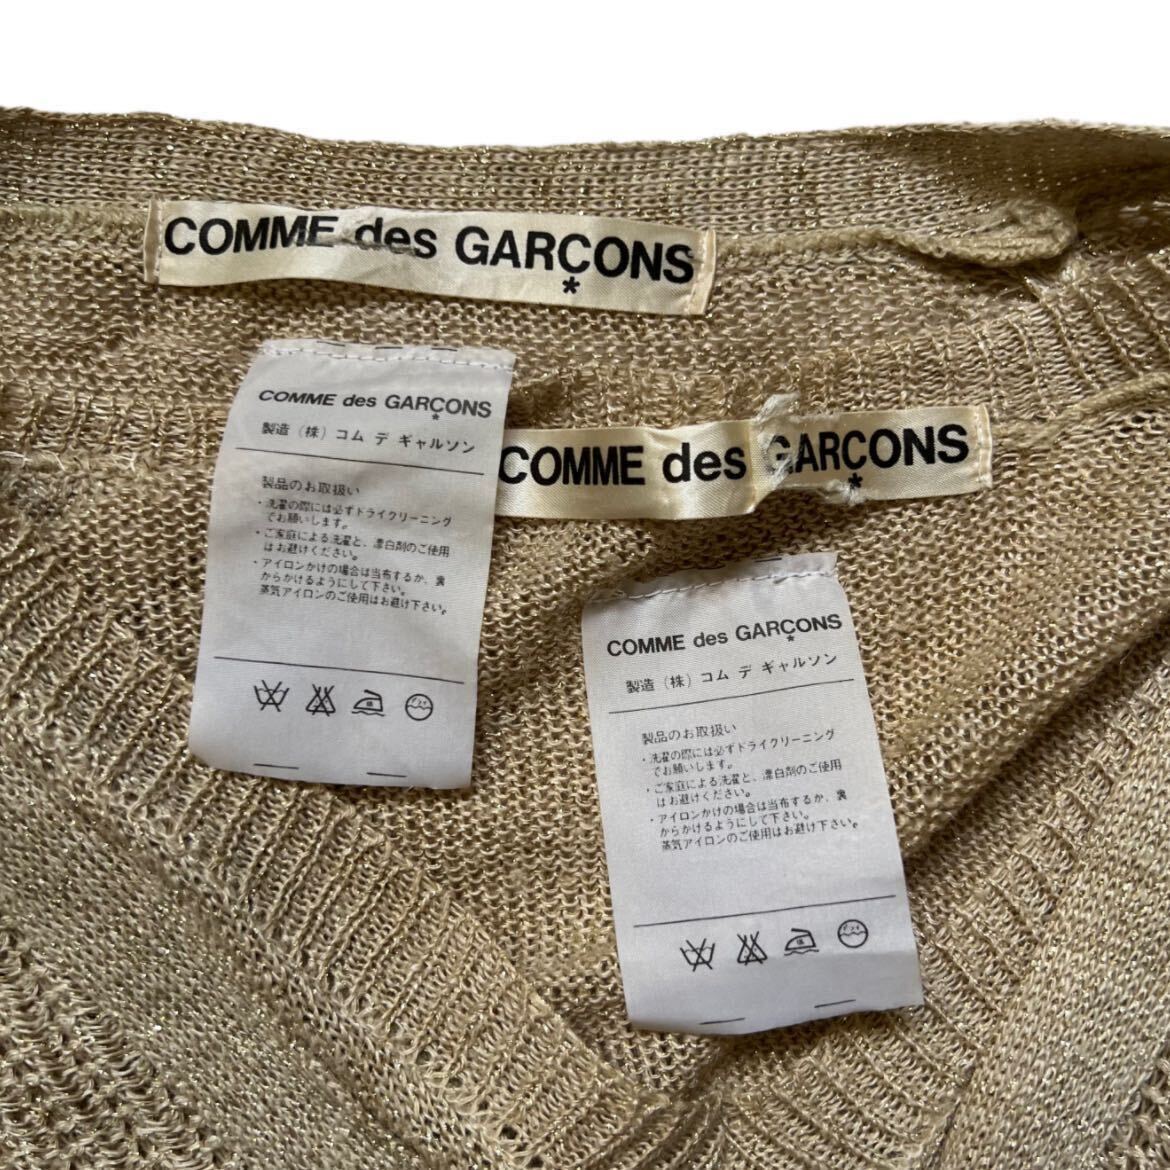 希少 70s COMME does GARCONS ensemble glitter knit cardigan archive collection sweater ReiKawakubo Japanese label Rare vintage 初期_画像6